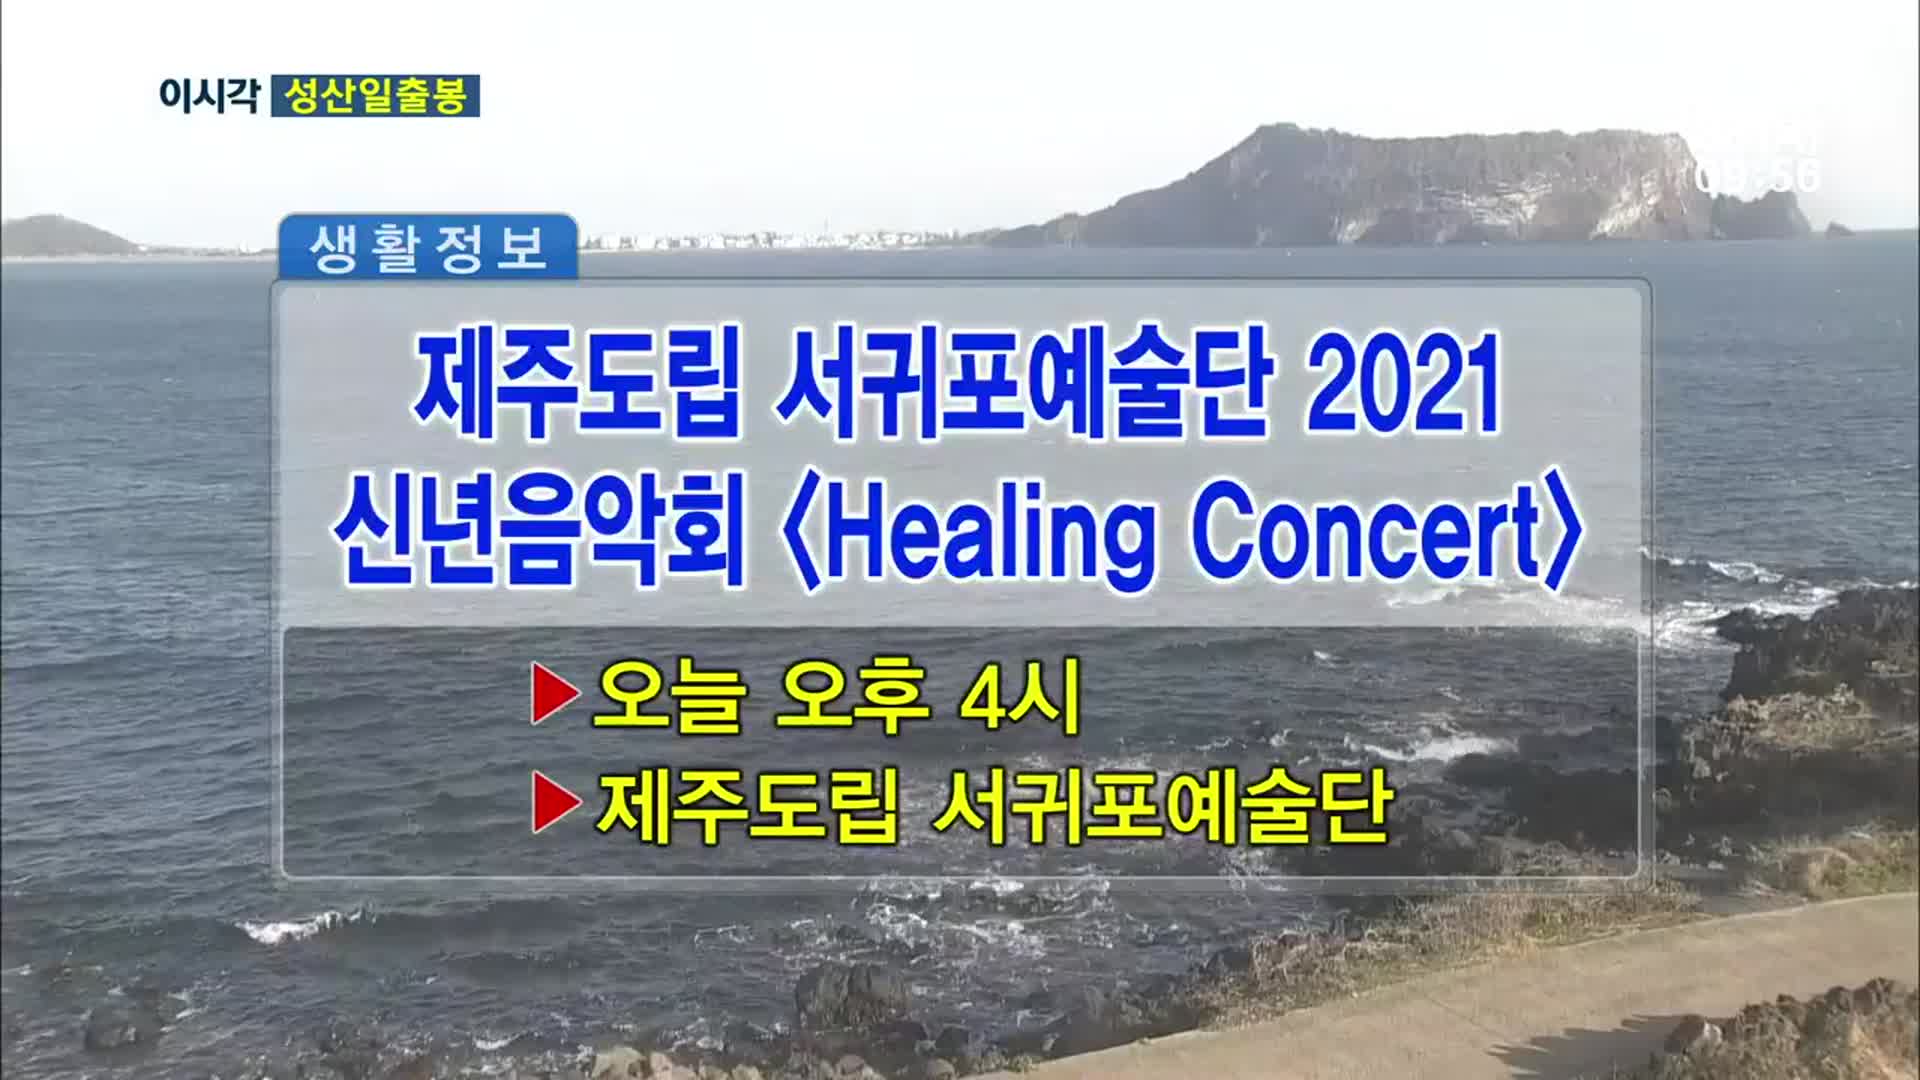 제주도립 서귀포예술단 2021 신년음악회 ＜Healing Concert＞ 외